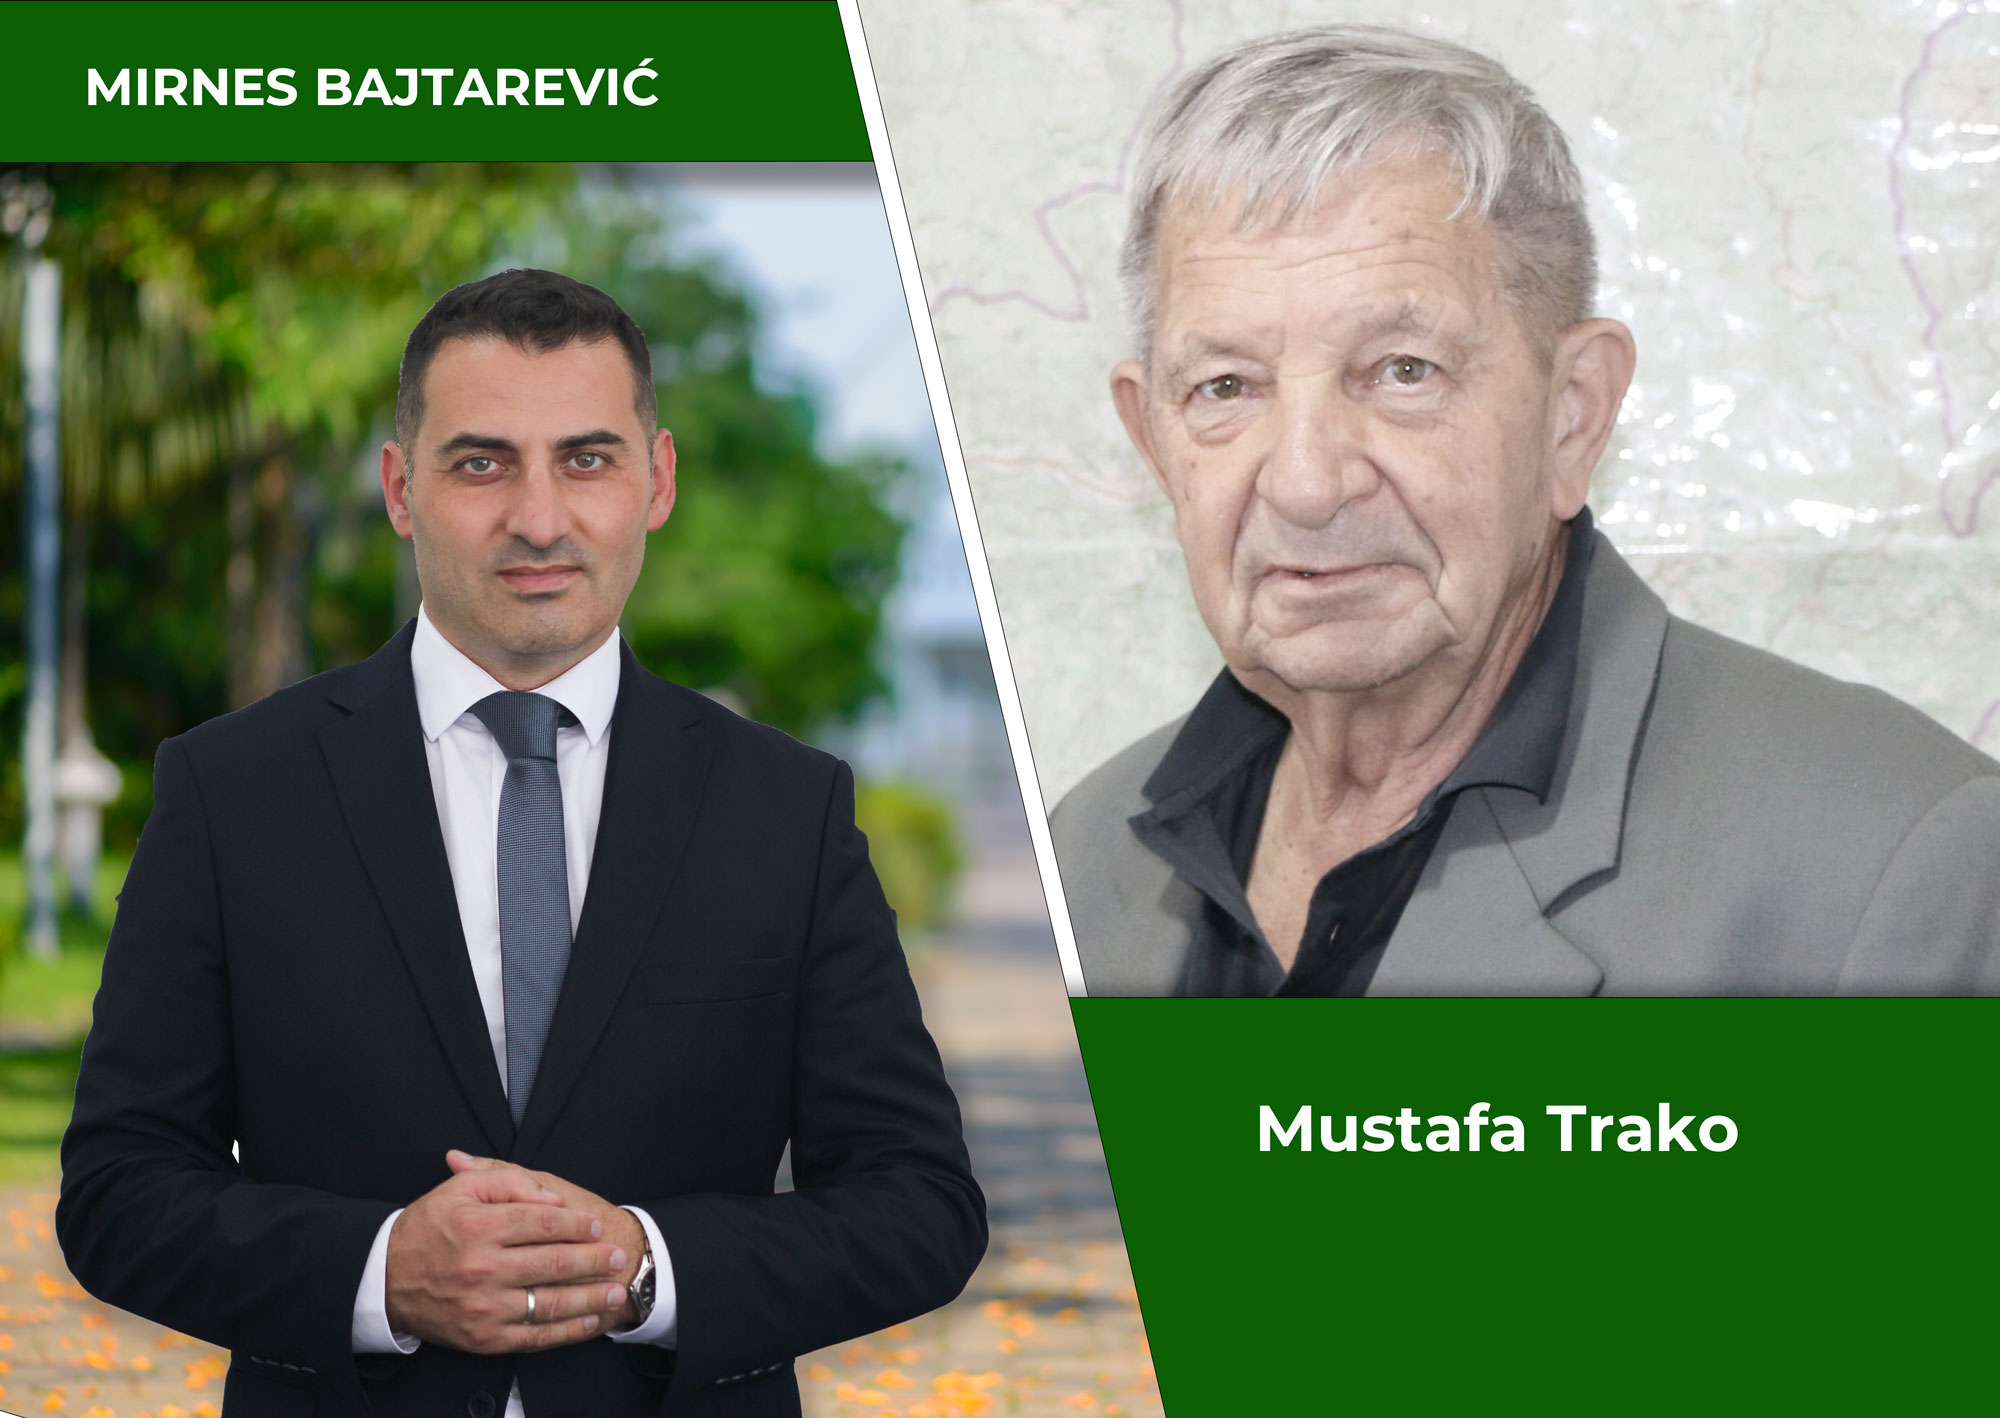 Mustafa Trako: Čvrsto podržavam i preporučujem Mirnesa Bajtarevića, kandidata za načelnika Općine Kakanj